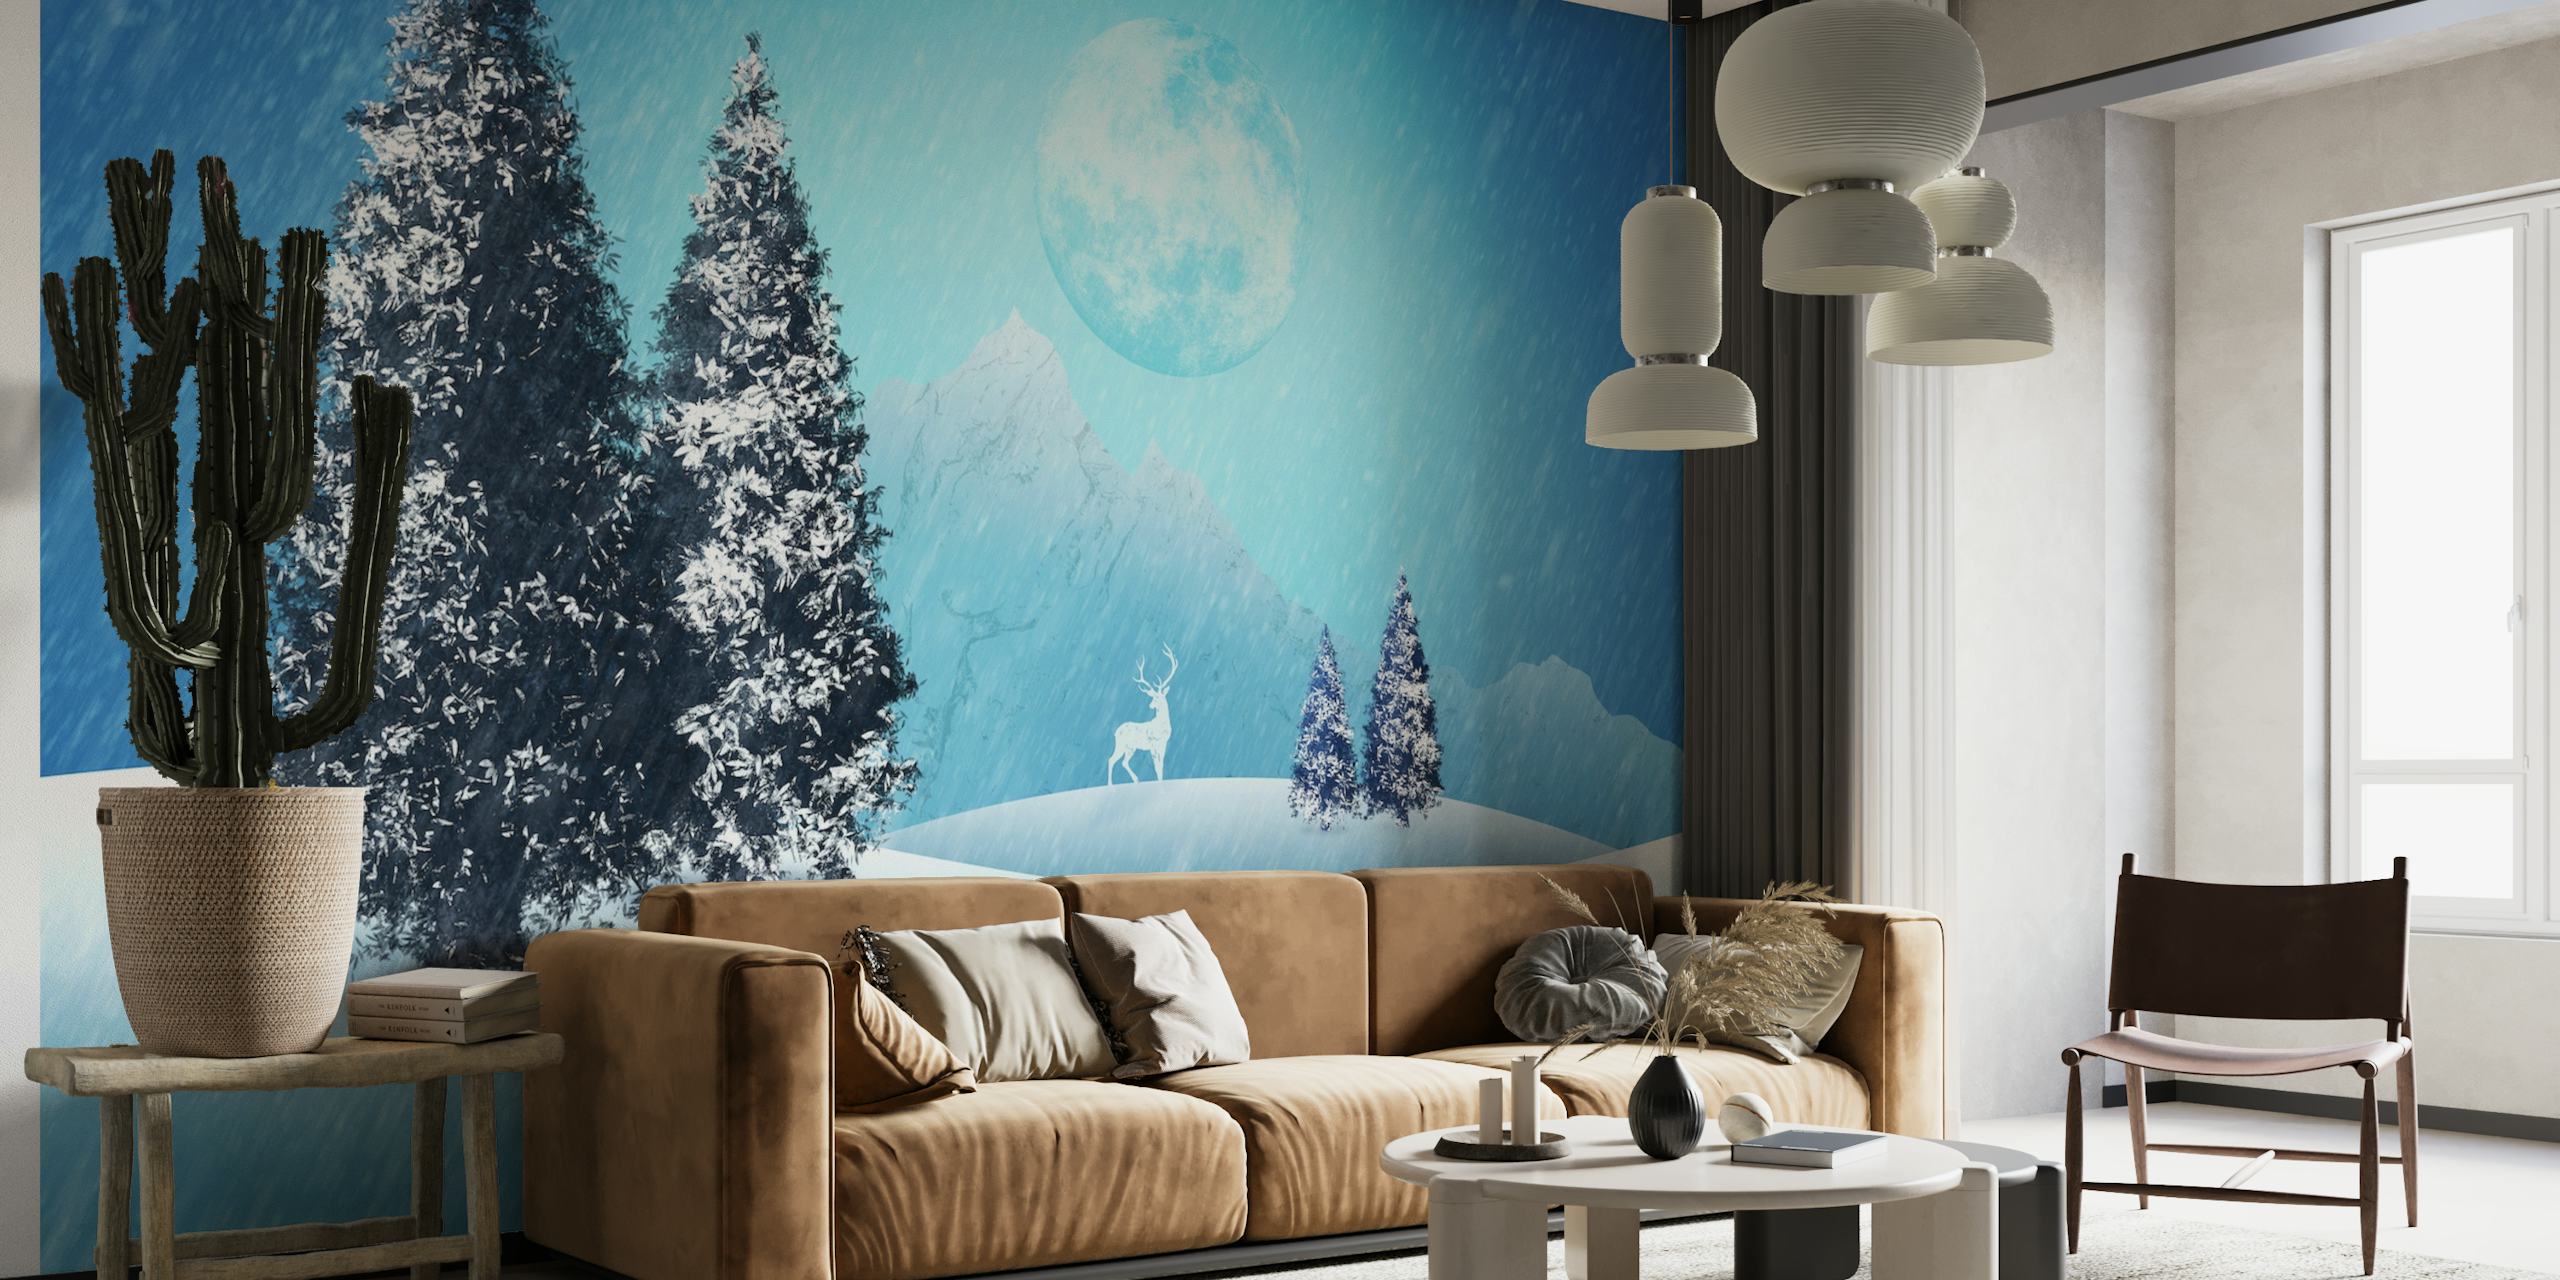 The last christmas reindeer wallpaper